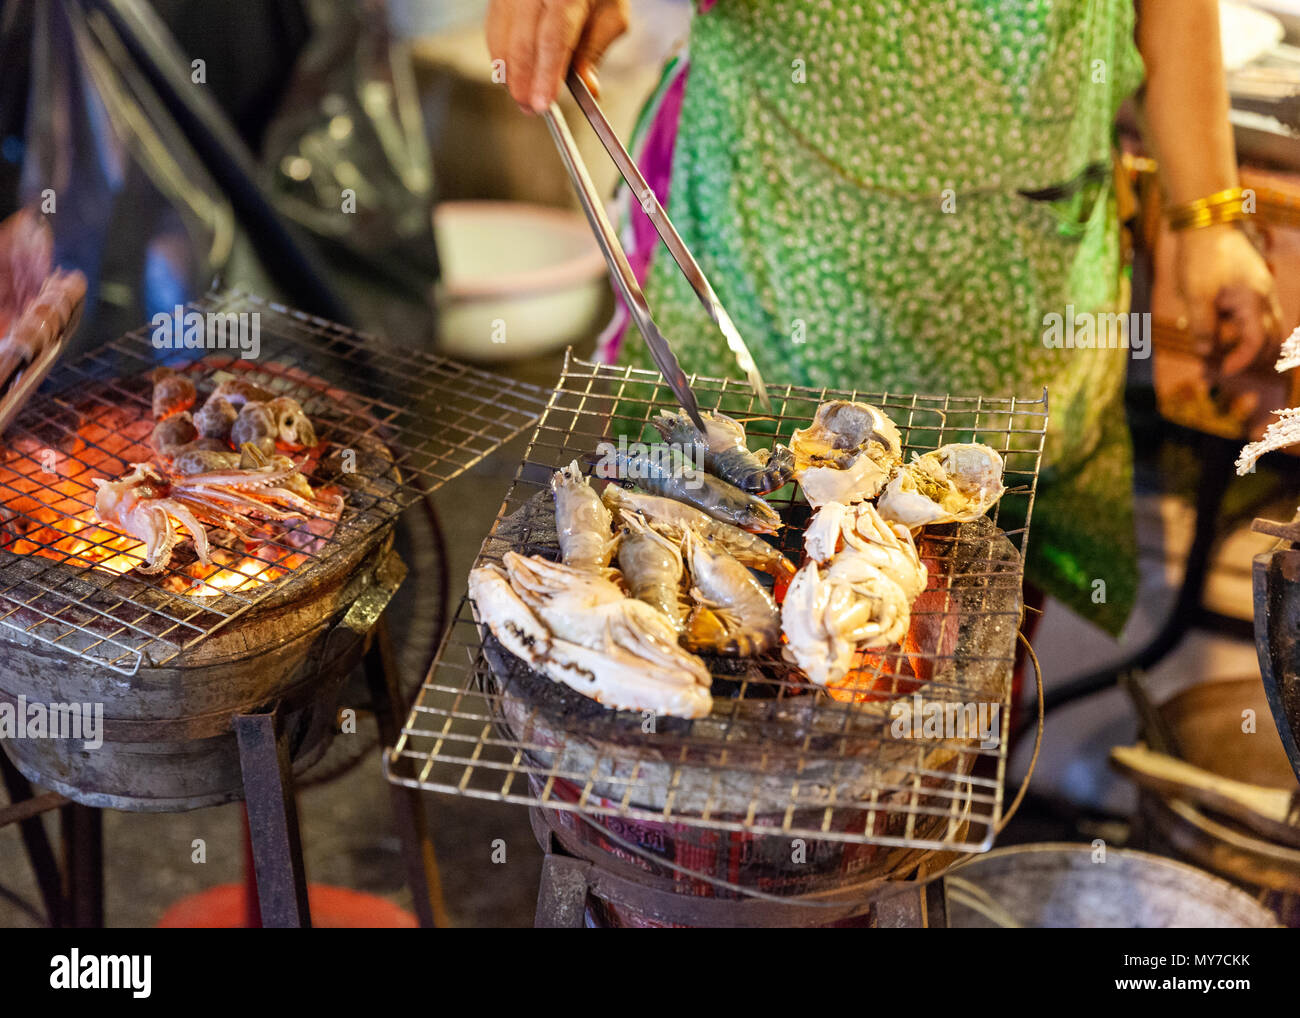 CHIANG MAI, THAÏLANDE - 27 août : cuisiniers de vendeurs d'aliments sur des fruits de mer au marché du samedi soir (walking street) Le 27 août 2016 à Chiang Mai, Thaïlande. Banque D'Images